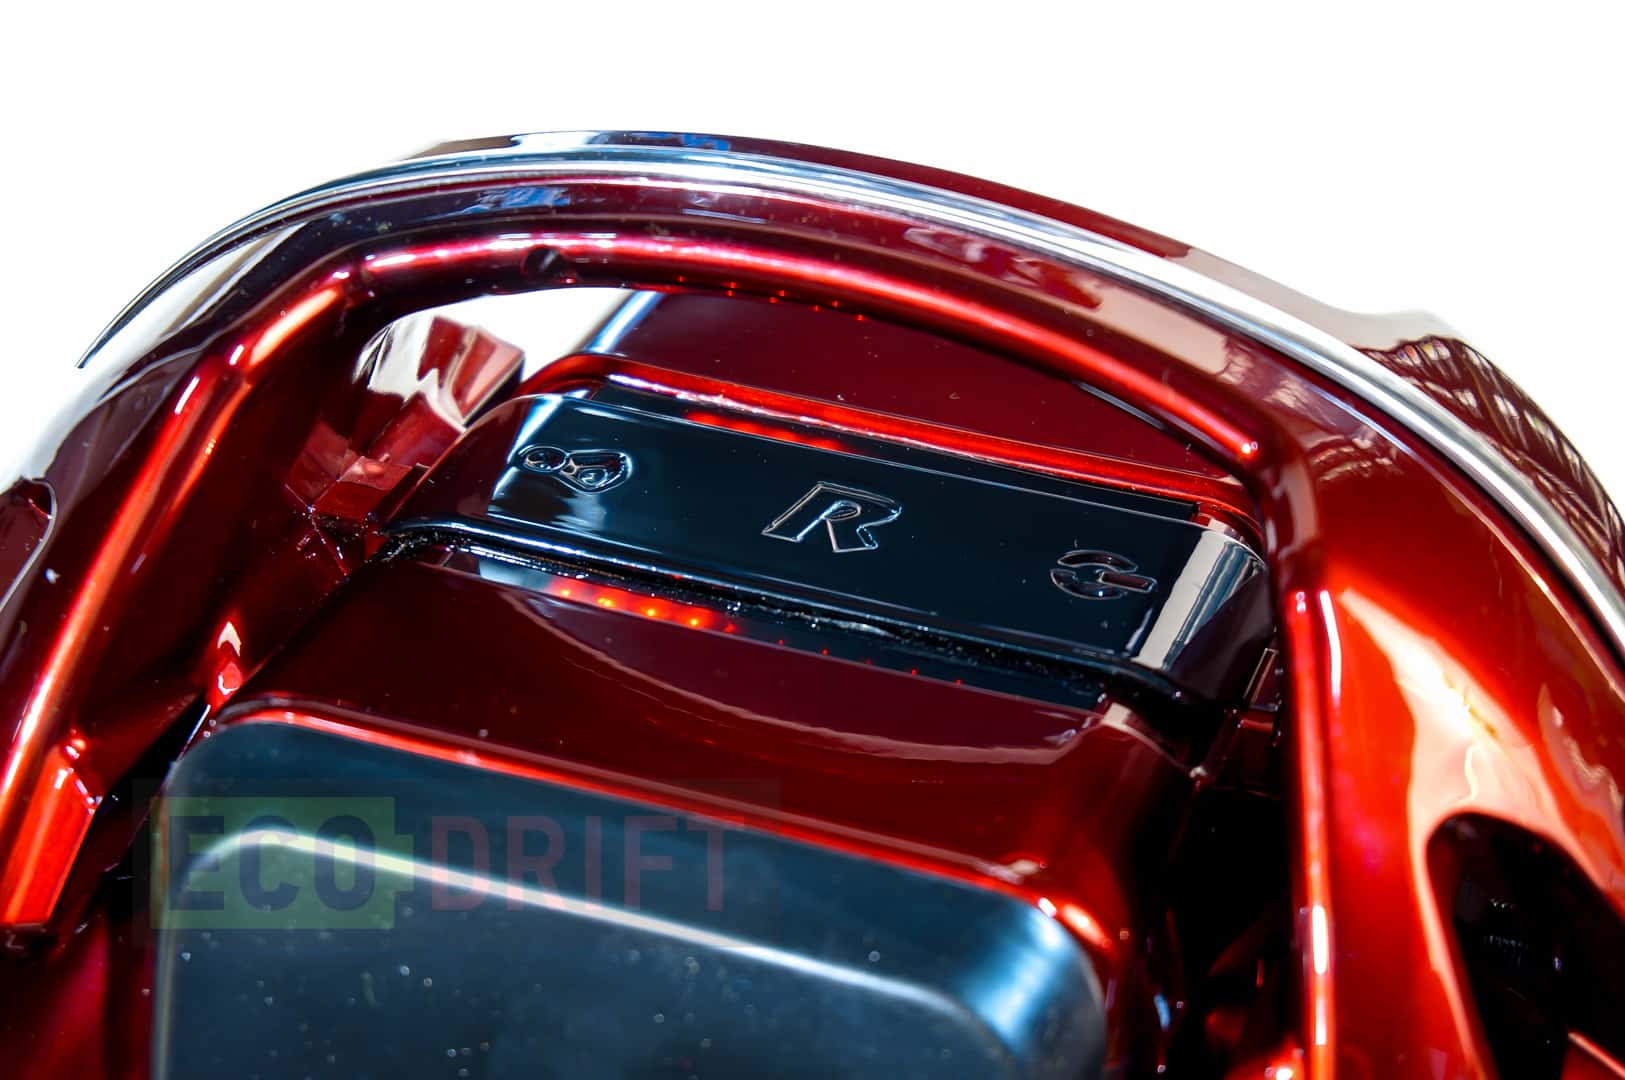 Долгожданное моноколесо в ярком дизайне (Rockwheel GT16)